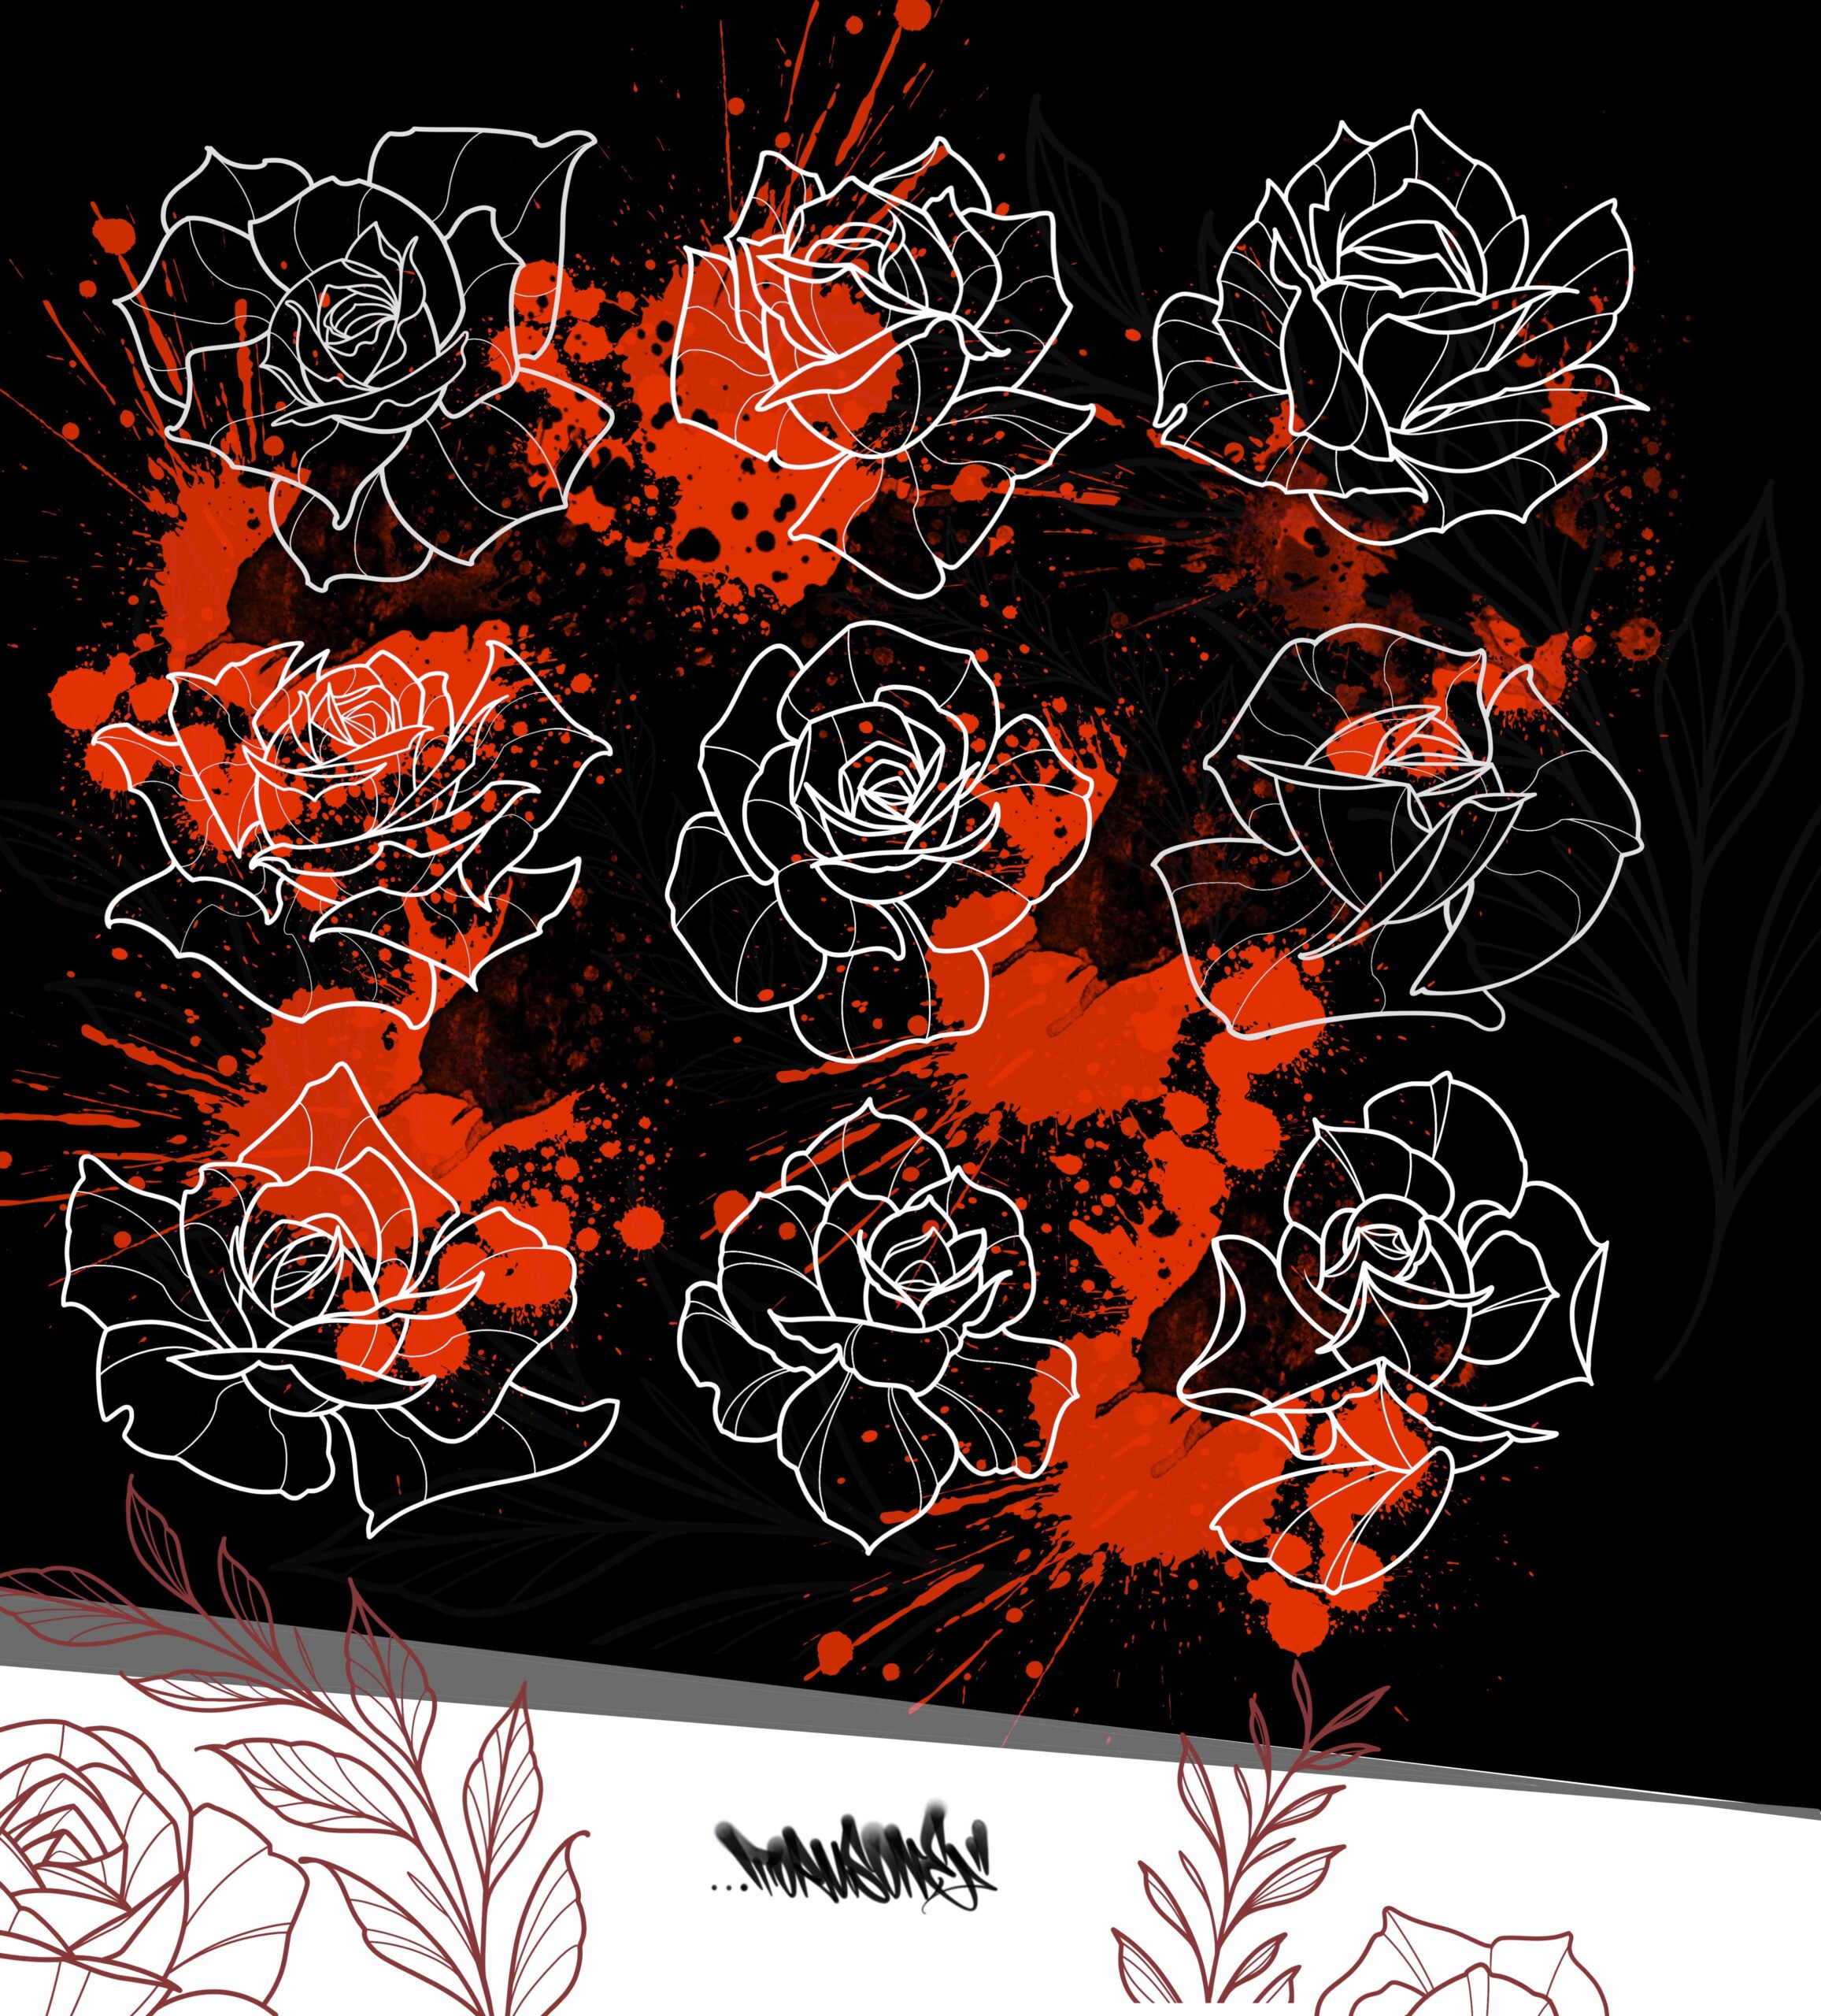 Rose Flower Procreate Stamp - Design Cuts